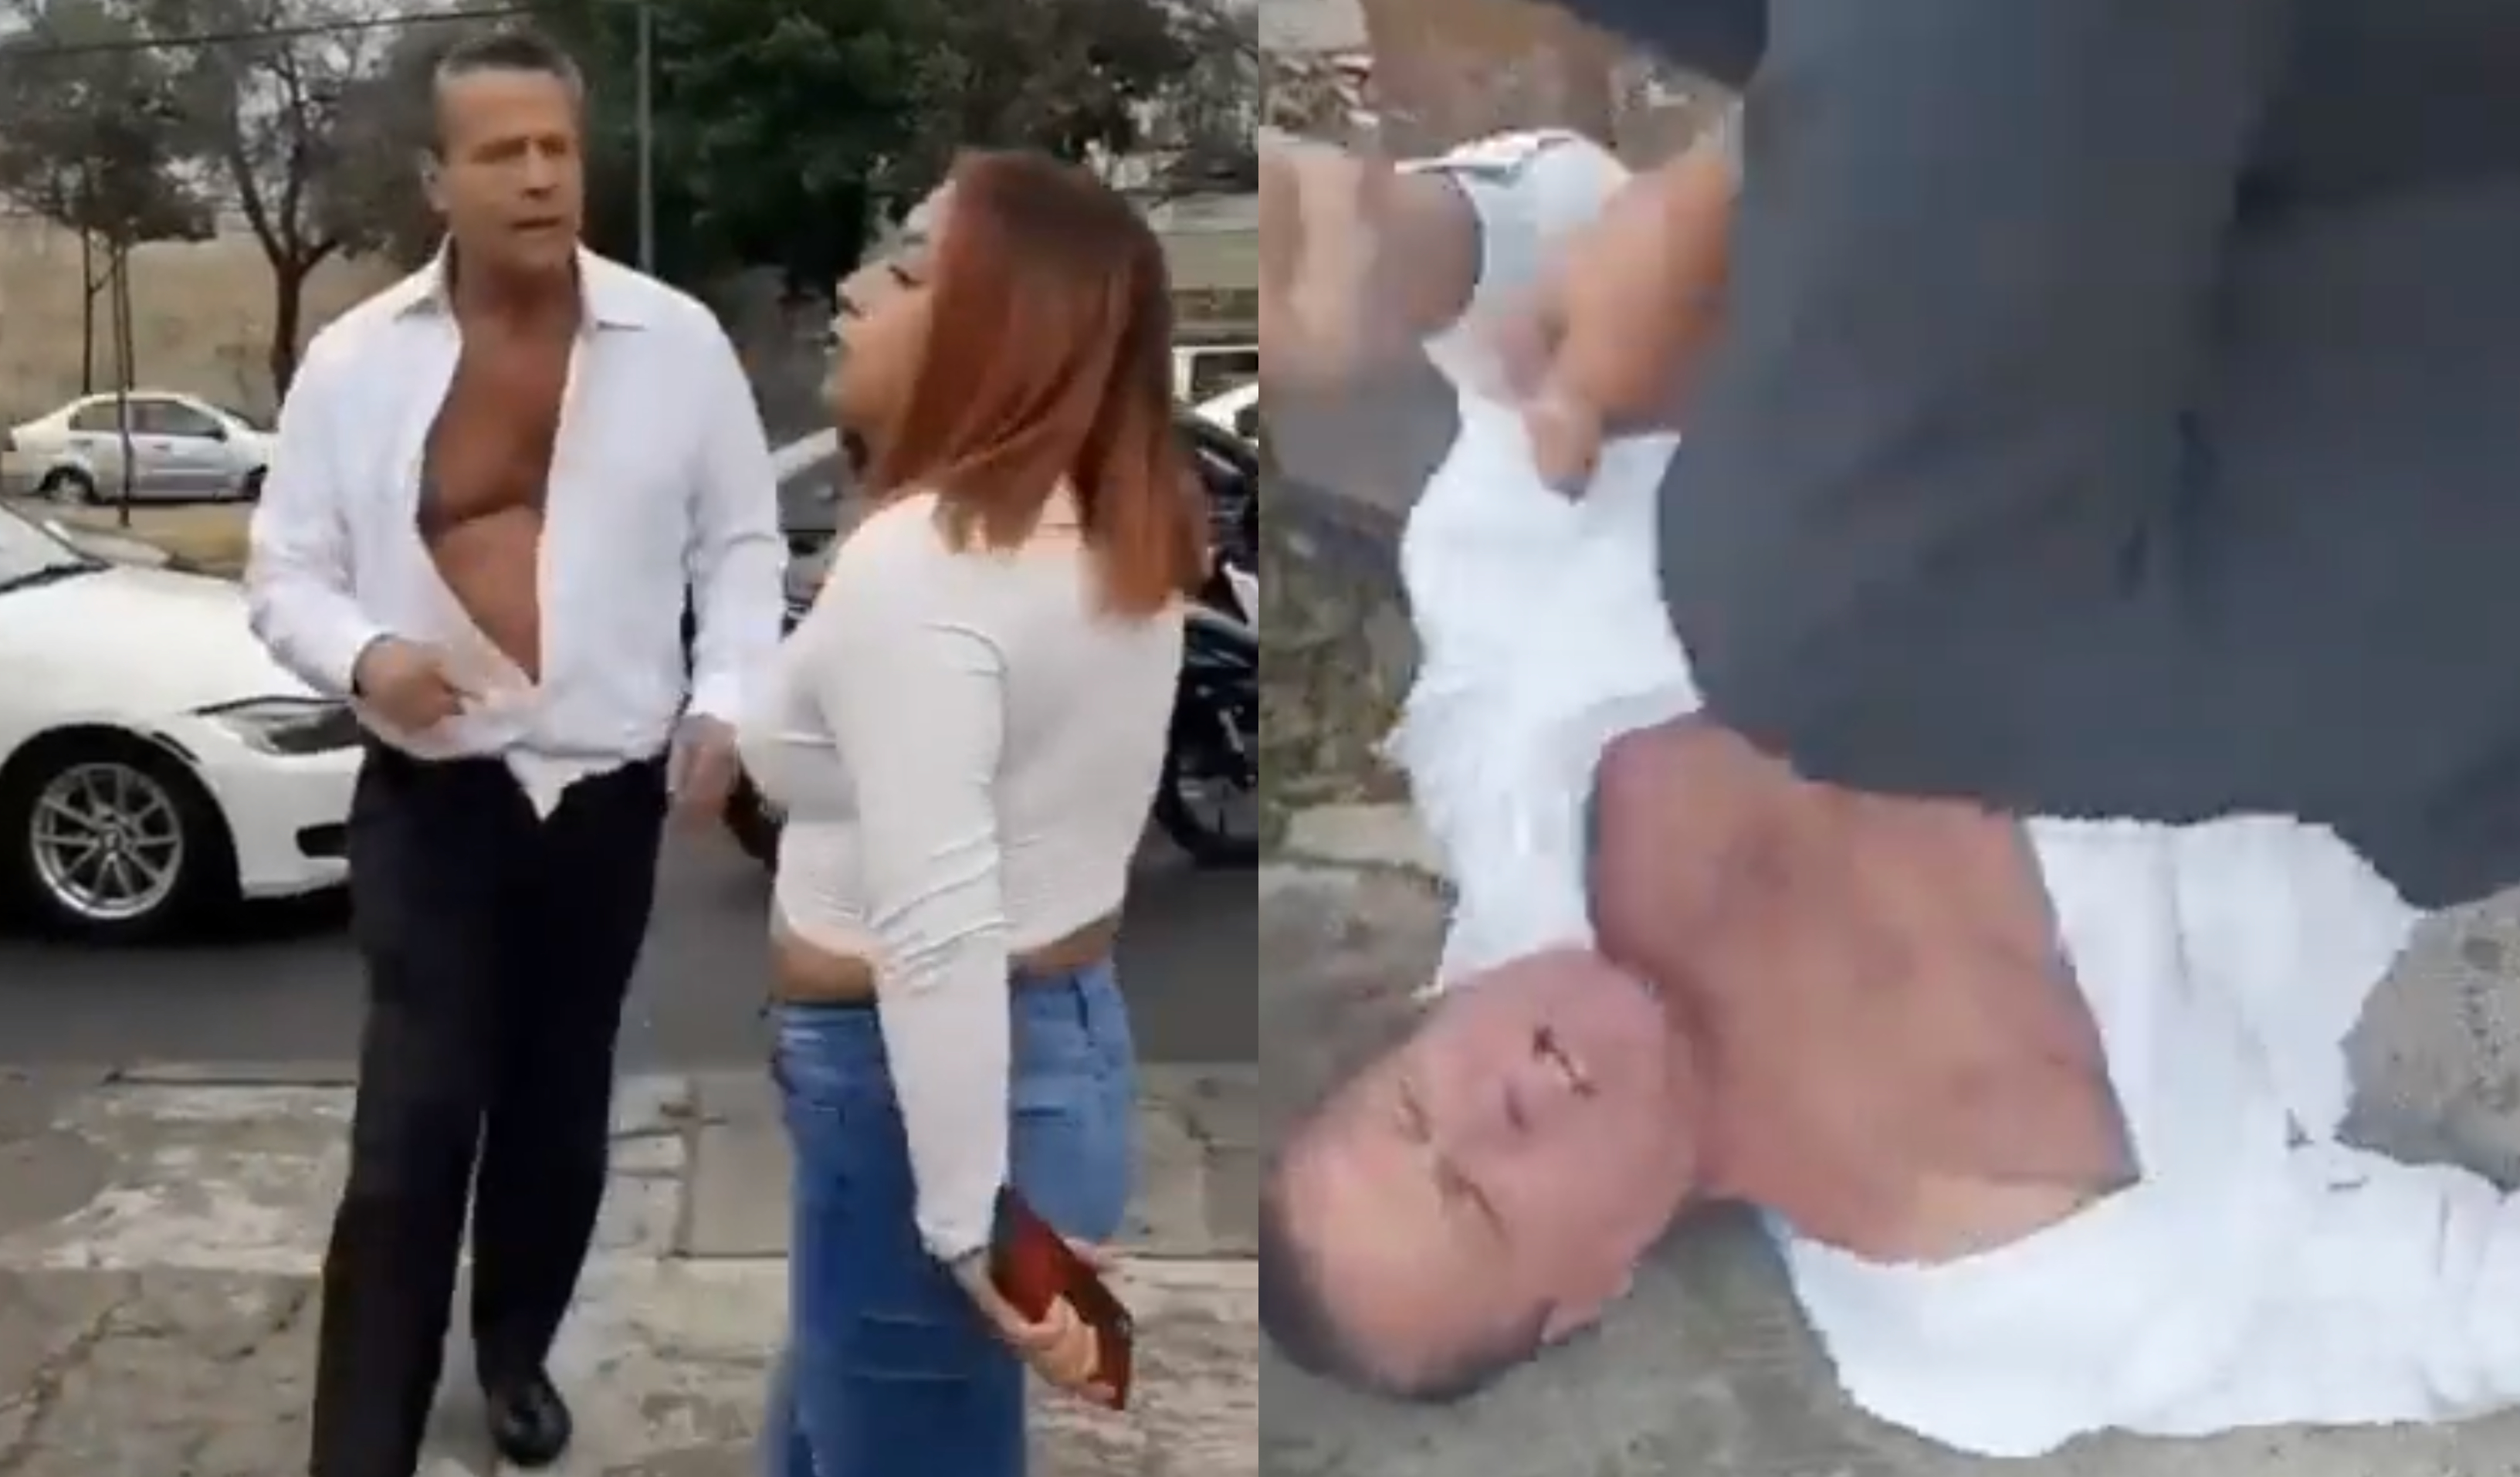 La pelea entre Alfredo Adame y una mujer quedó grabada en video y rápidamente se volvió viral. (Foto Prensa Libre: @pozainforma y @ssmesterazteca/Twitter)